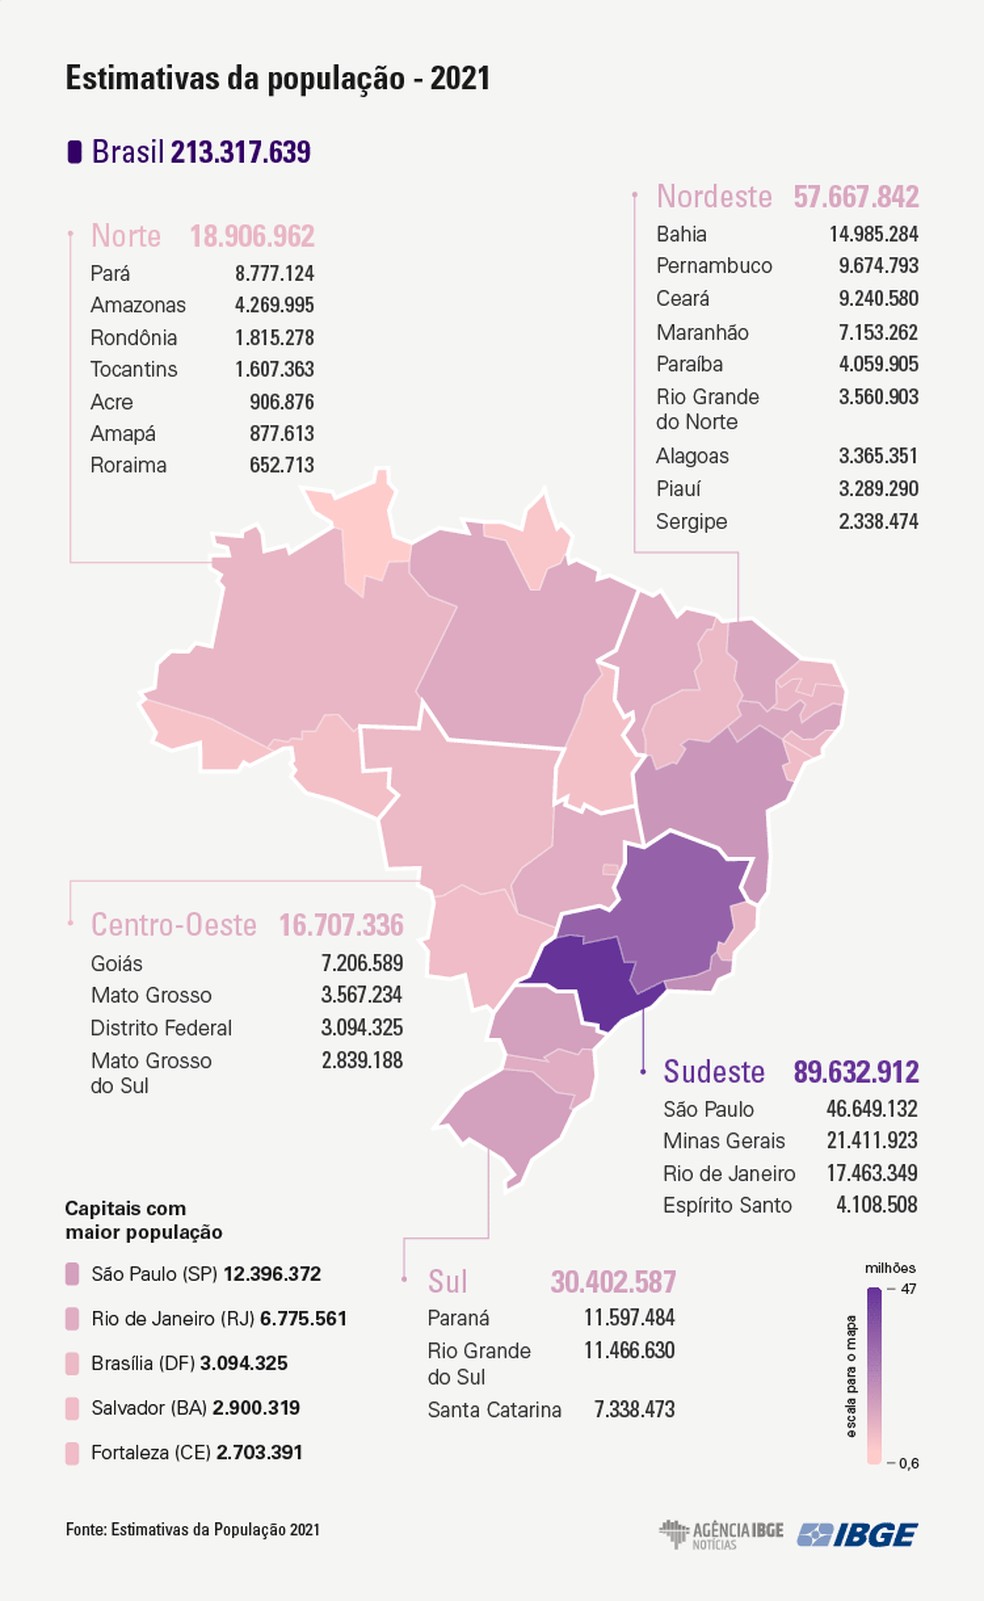 巴西国家地理统计局2021年巴西人口预期数量达2133亿